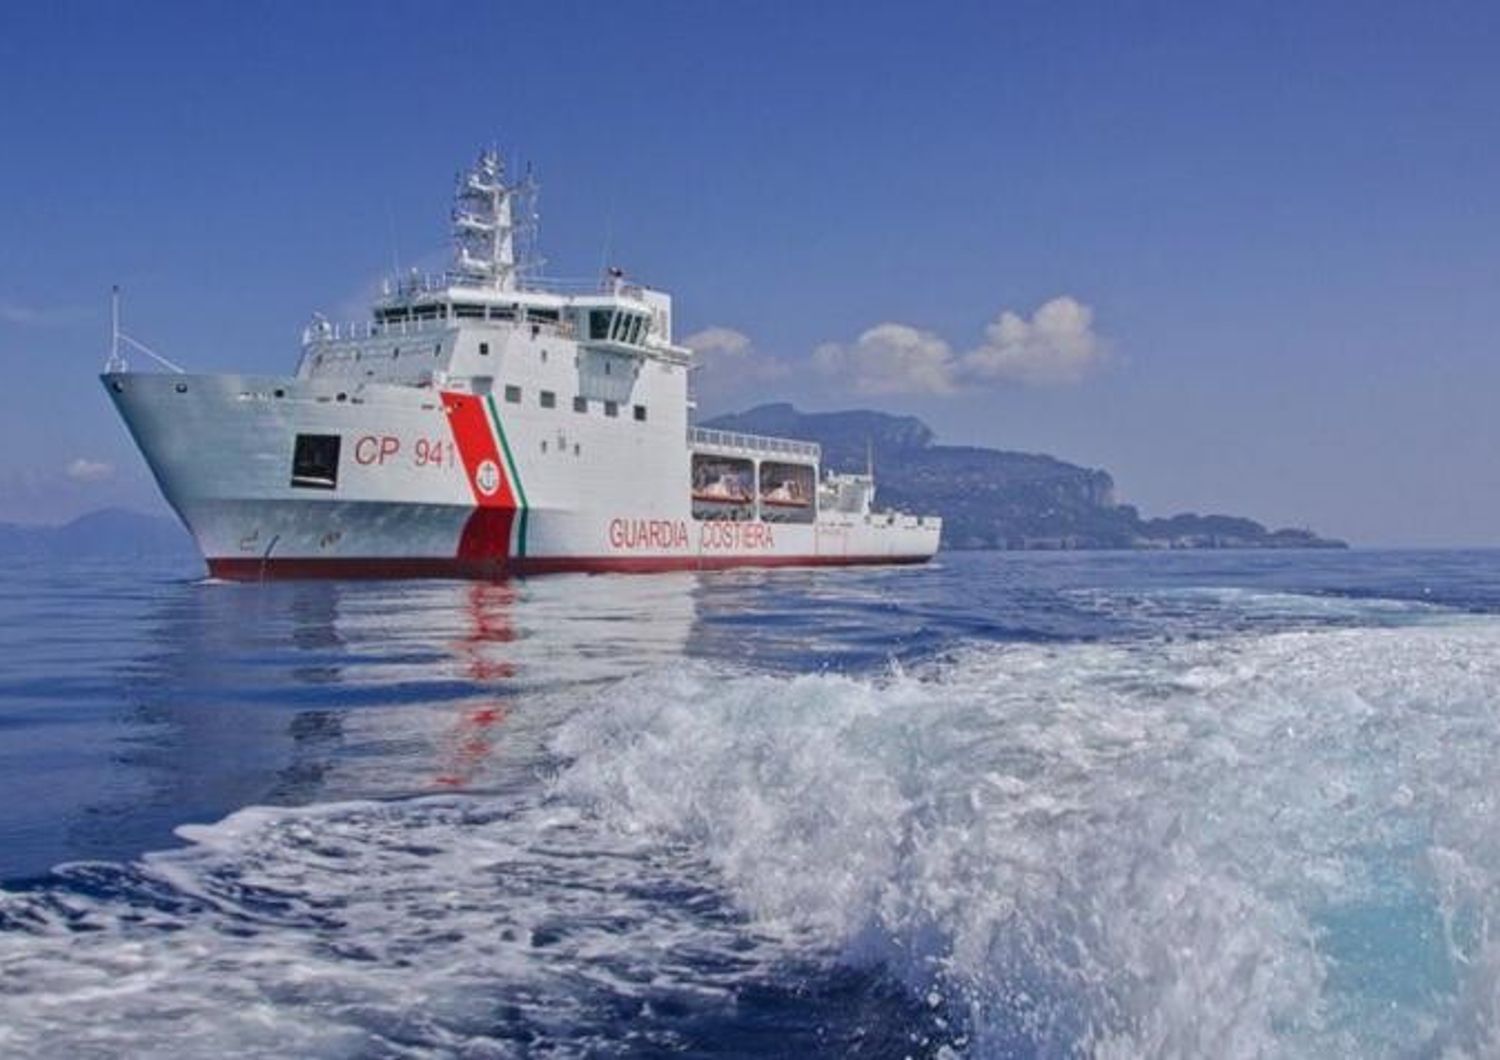 &nbsp; Guarda Costiera nave Diciotti salvataggiomigranti canale sicilia - twitter